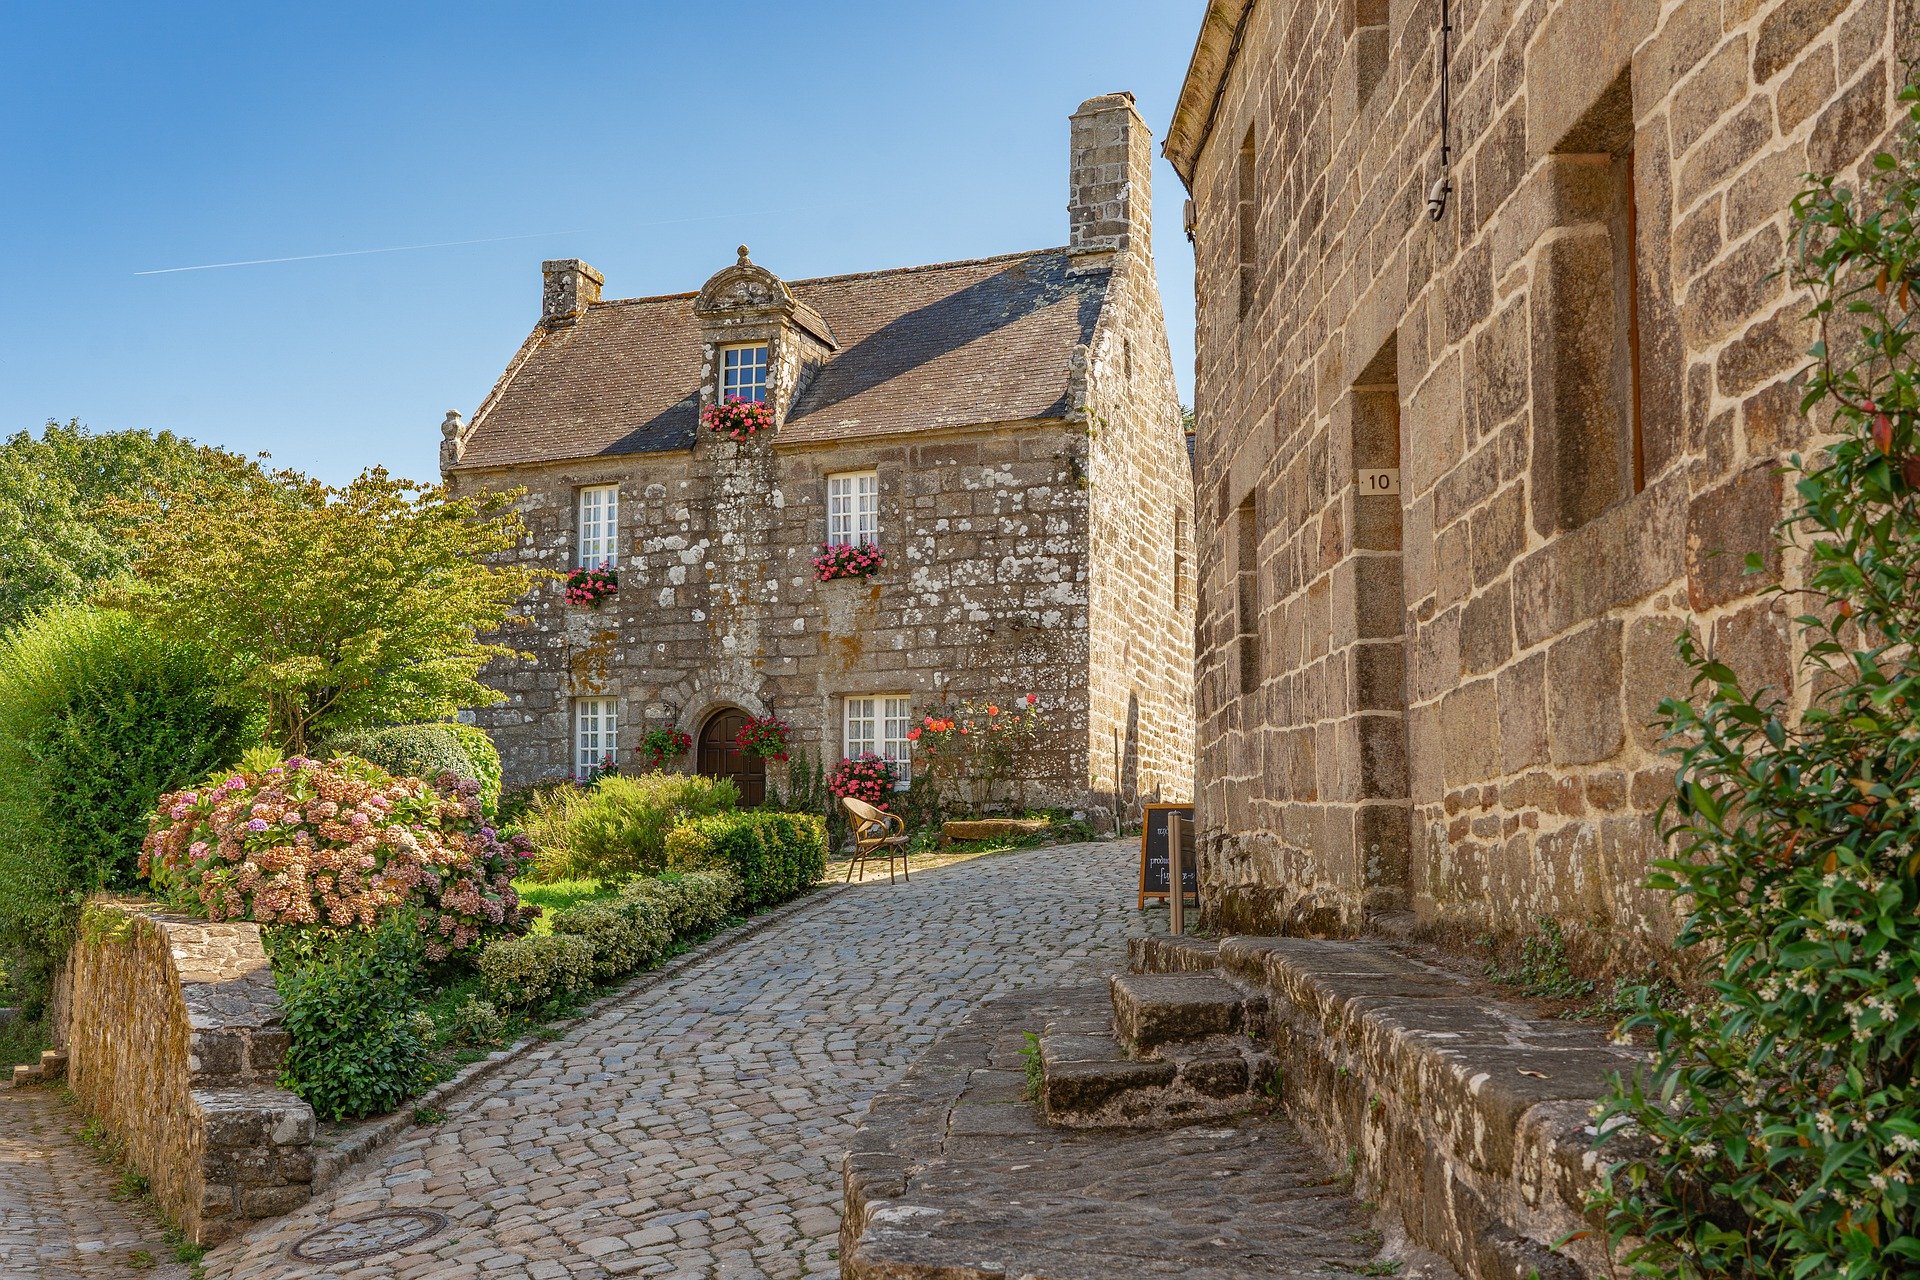 Comment trouver son logement en Bretagne